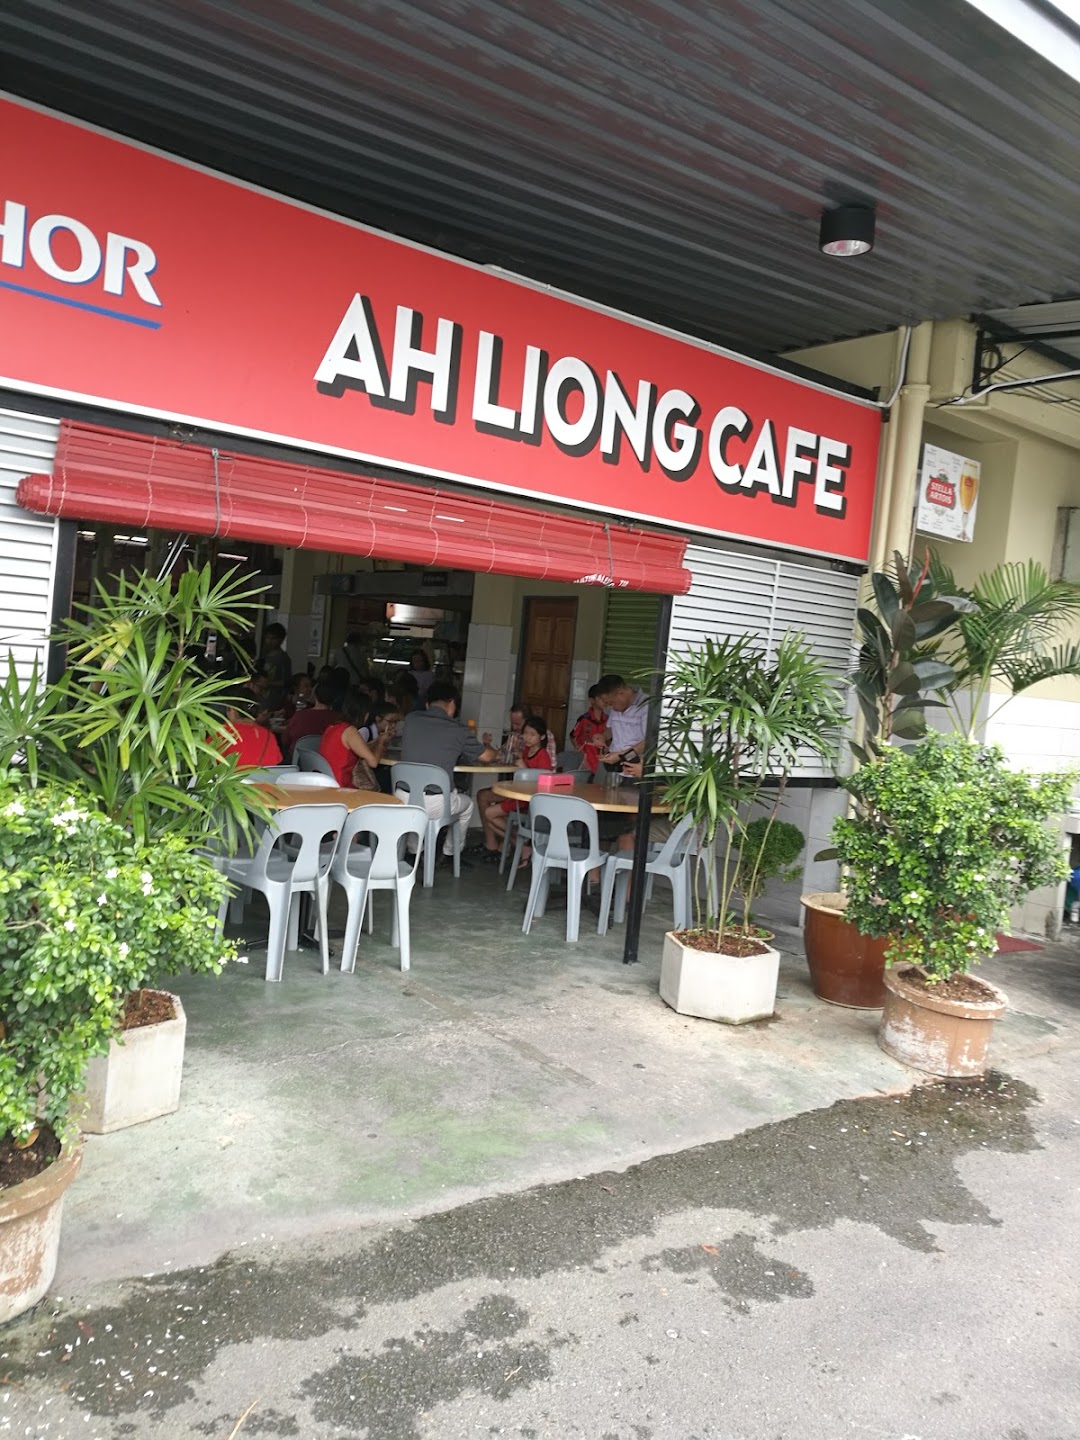 Ah Liong Cafe